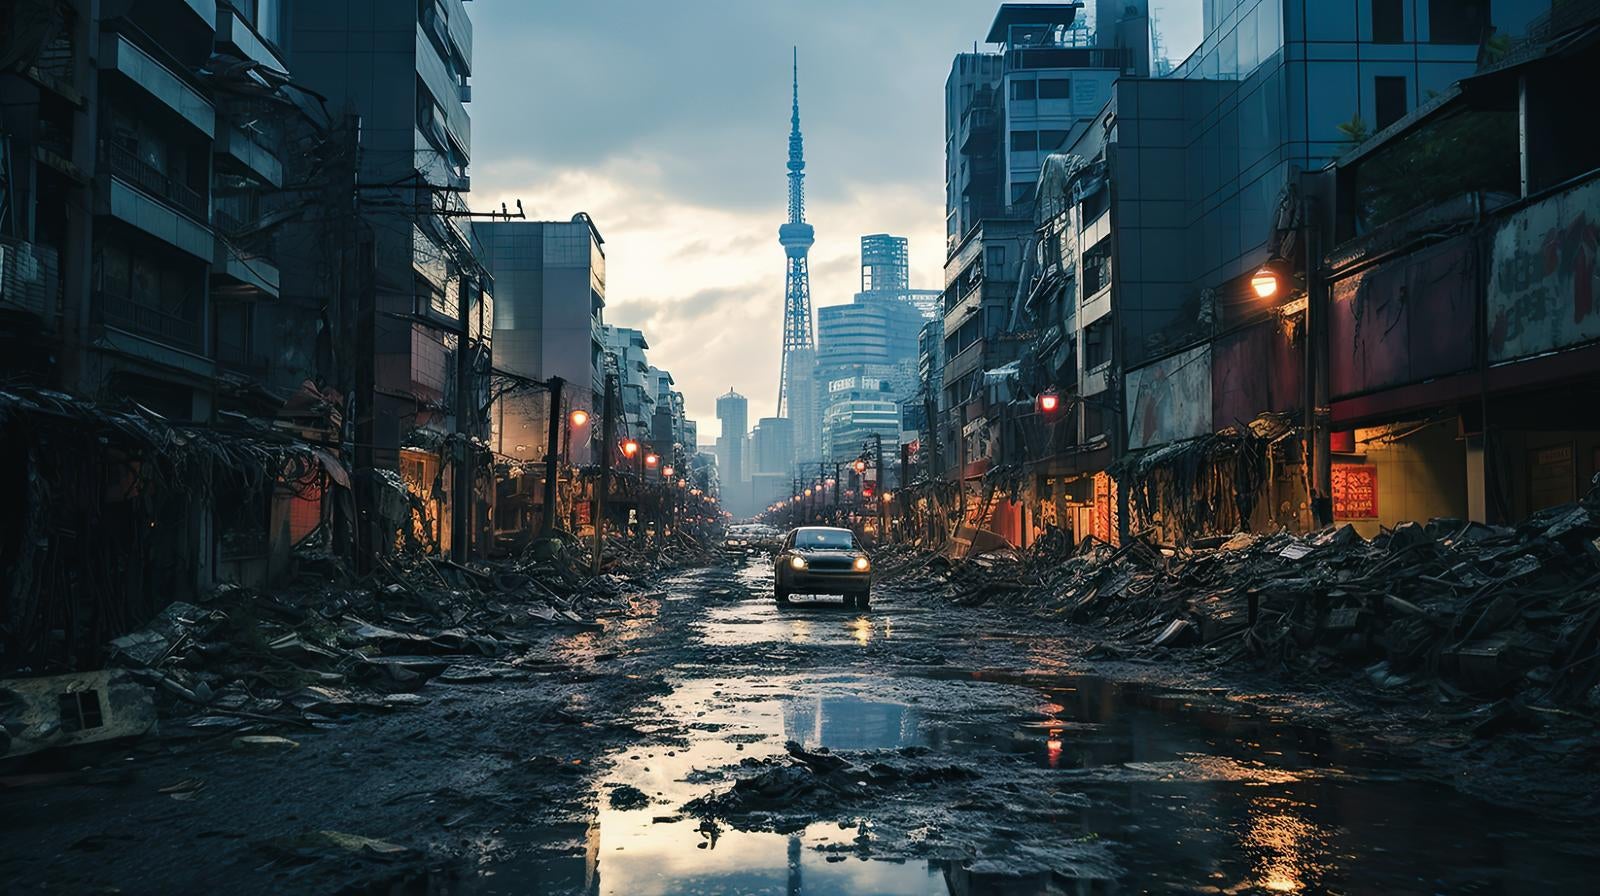 「終末の世界、荒廃した都市の風景」の写真